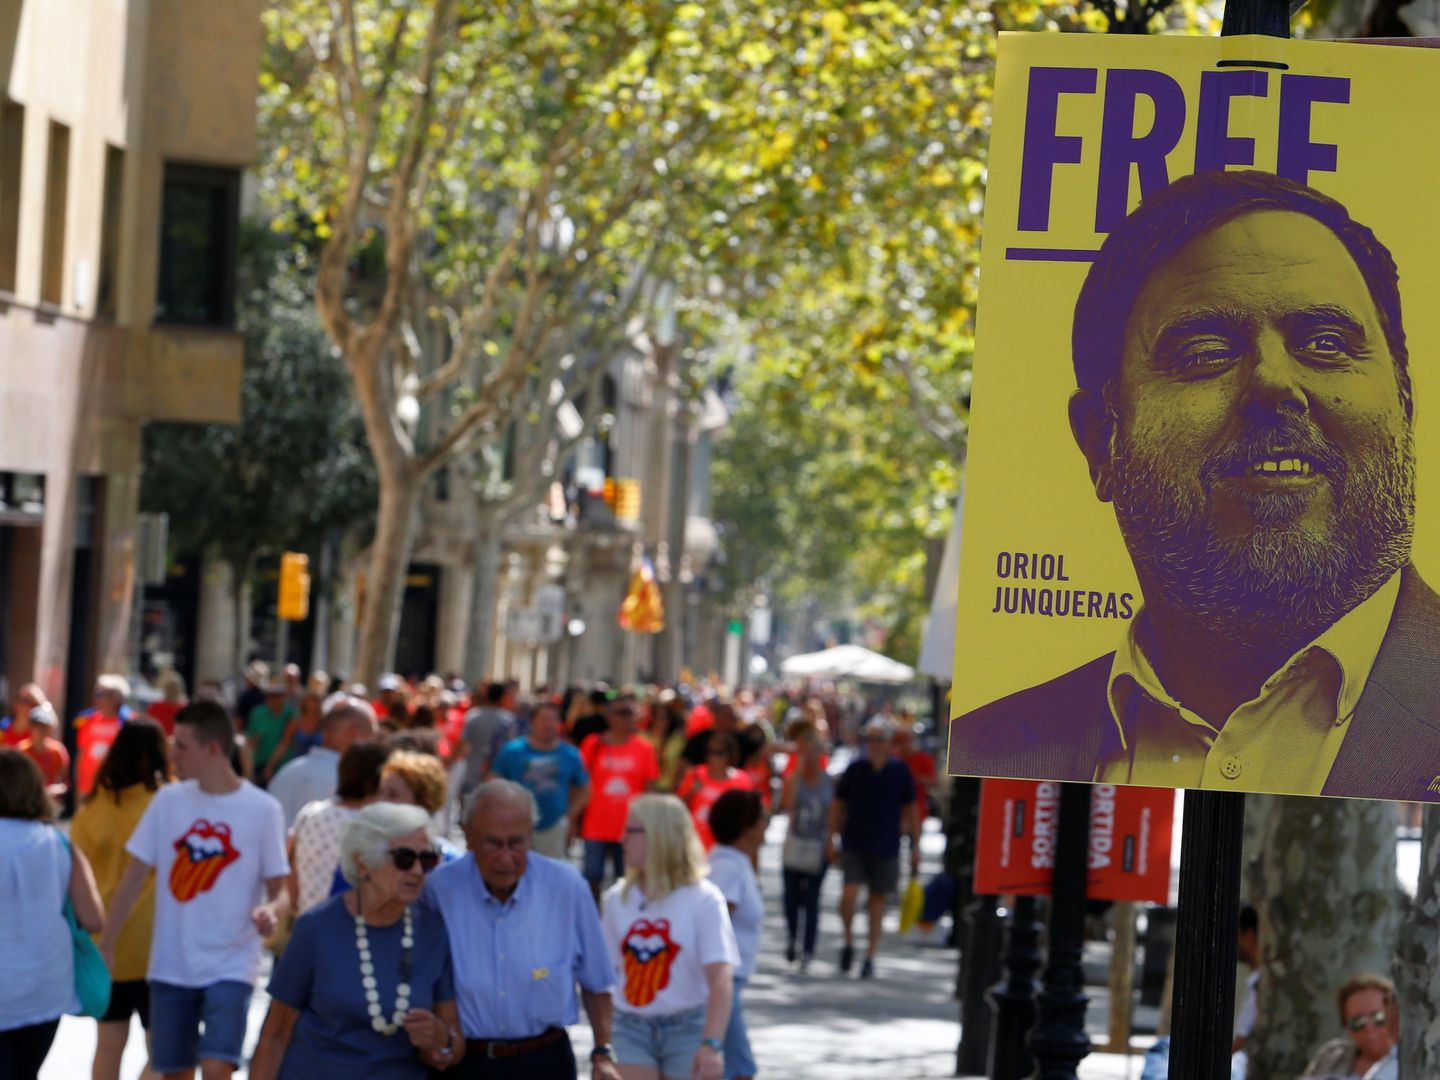 Foto de archivo: cartel donde se pide la libertad de Oriol Junqueras. (EFE)